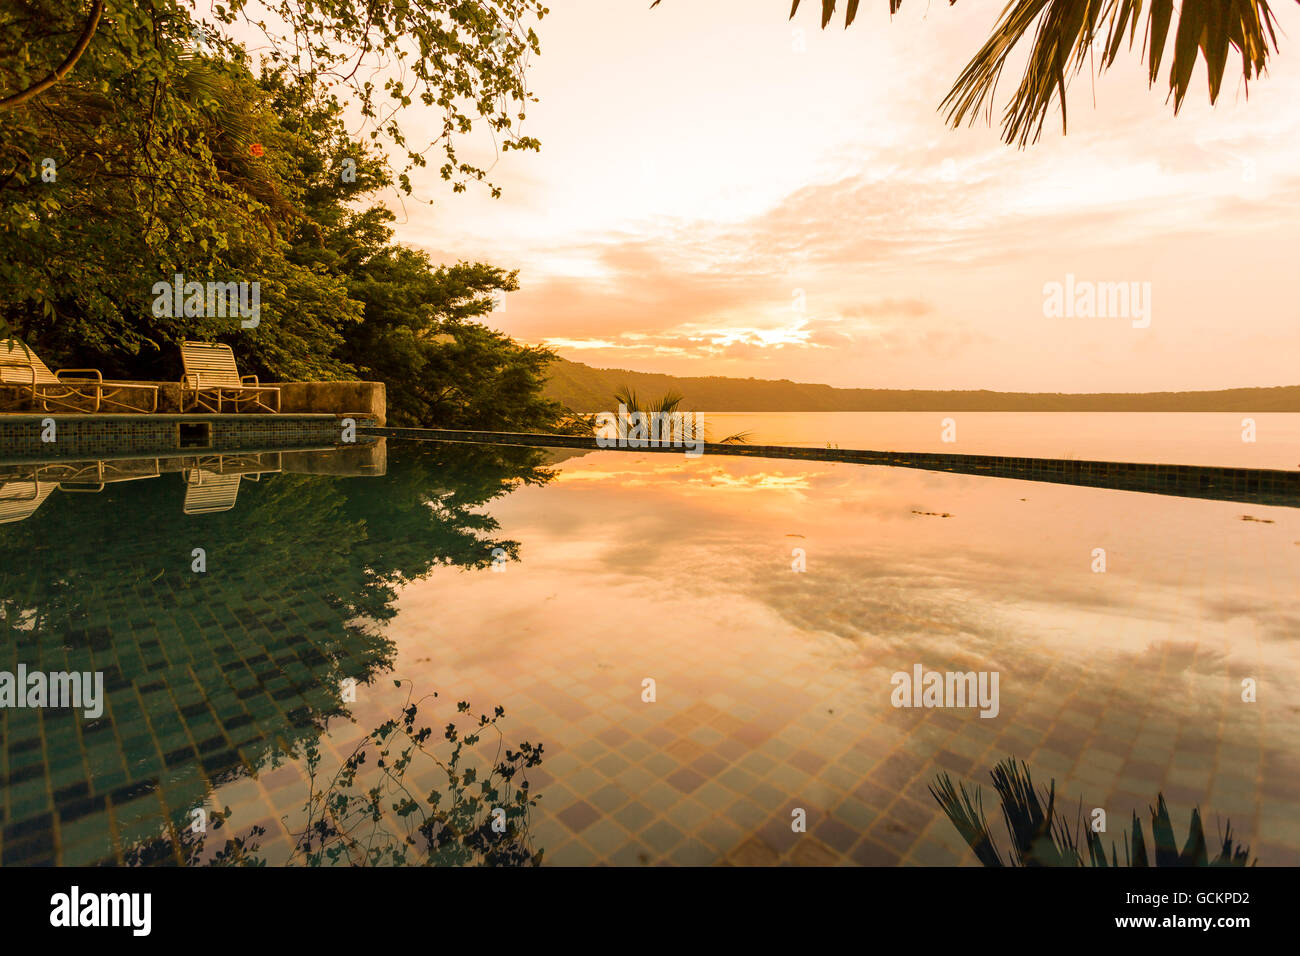 Lagune von Apoyo, Nicaragua - Juni 2016. Sunrise-Blick von einem der Pools von Selva Azul Resort. Stockfoto